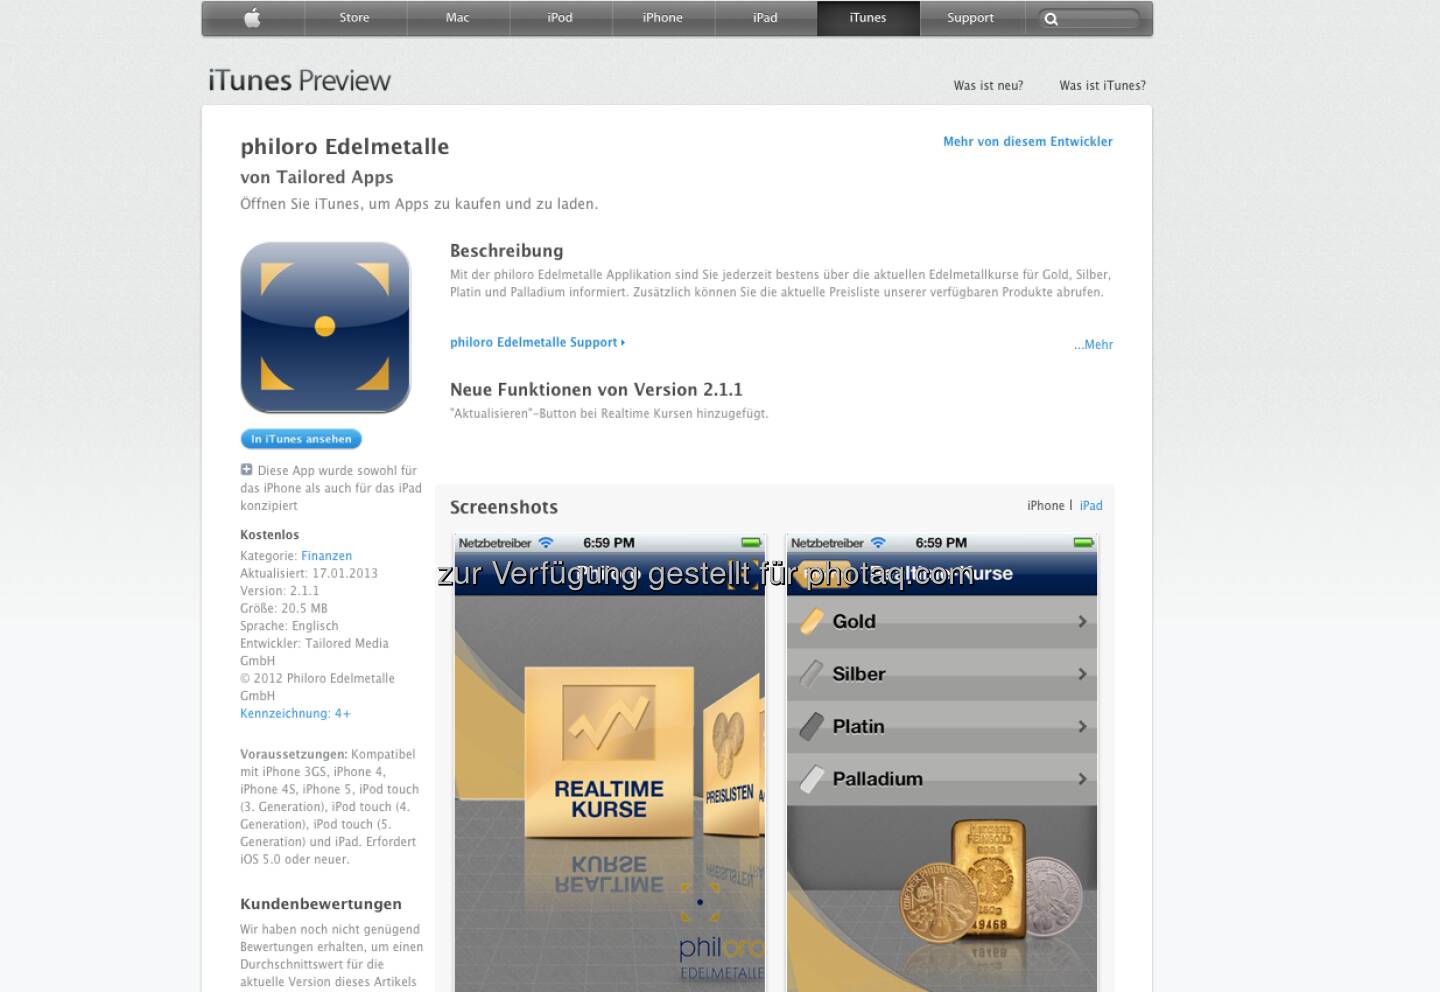 Die Philoro-App; mit tonnenweise Infos sowie Realtimekursen zu Gold; Silber & Co - https://itunes.apple.com/at/app/philoro-edelmetalle/id546382866?mt=8